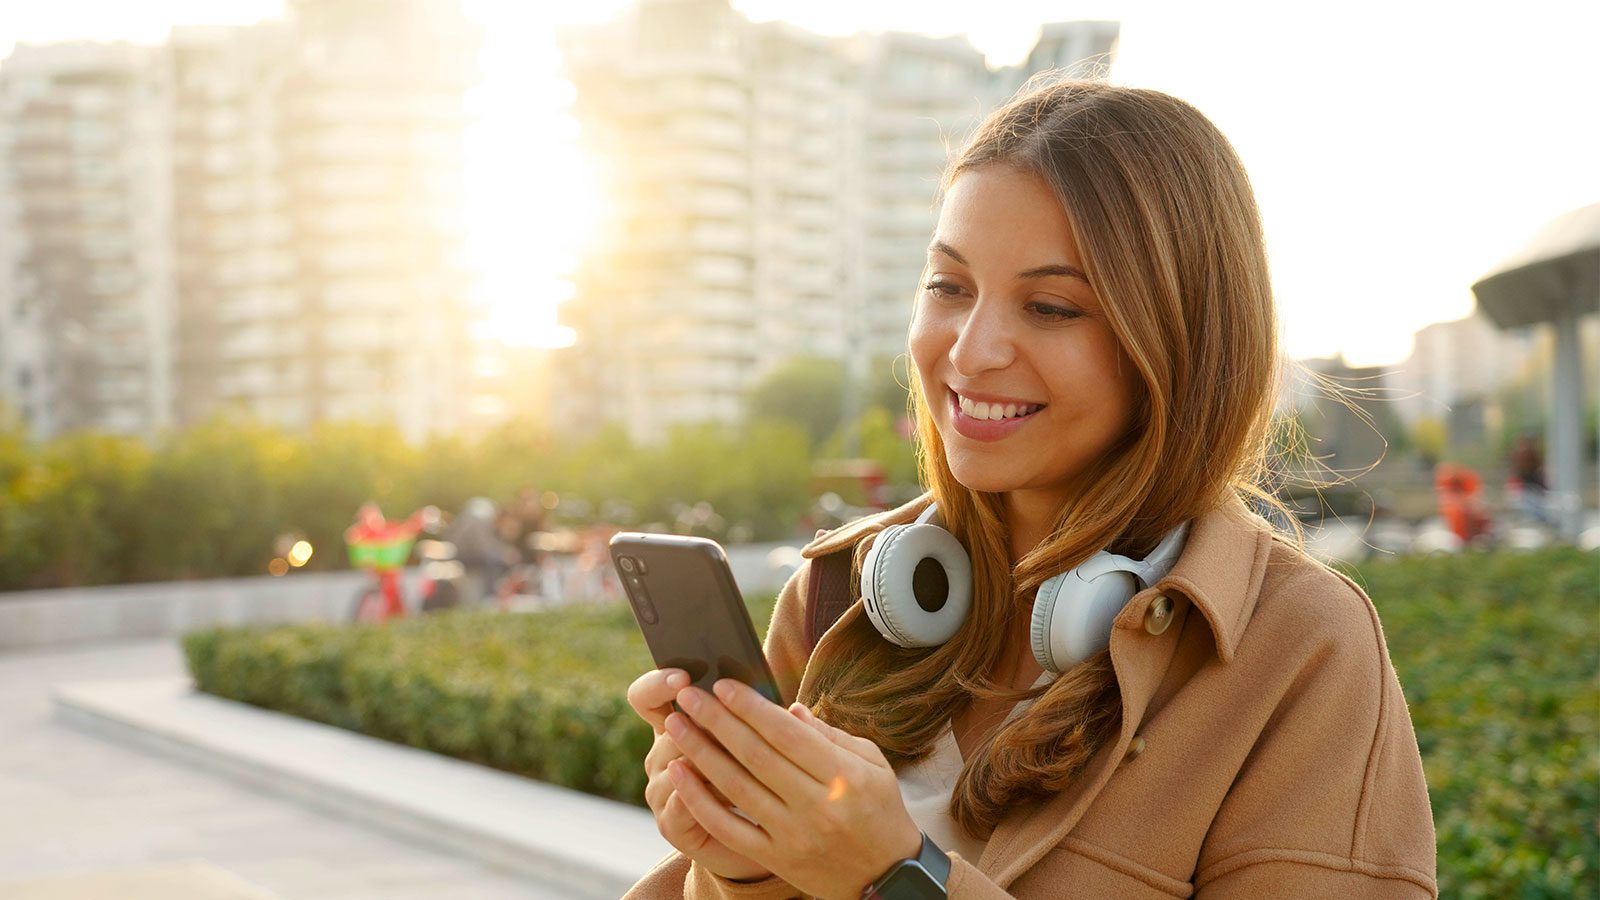 Billiga mobilabonnemang: 4 erbjudanden för att minska din faktura